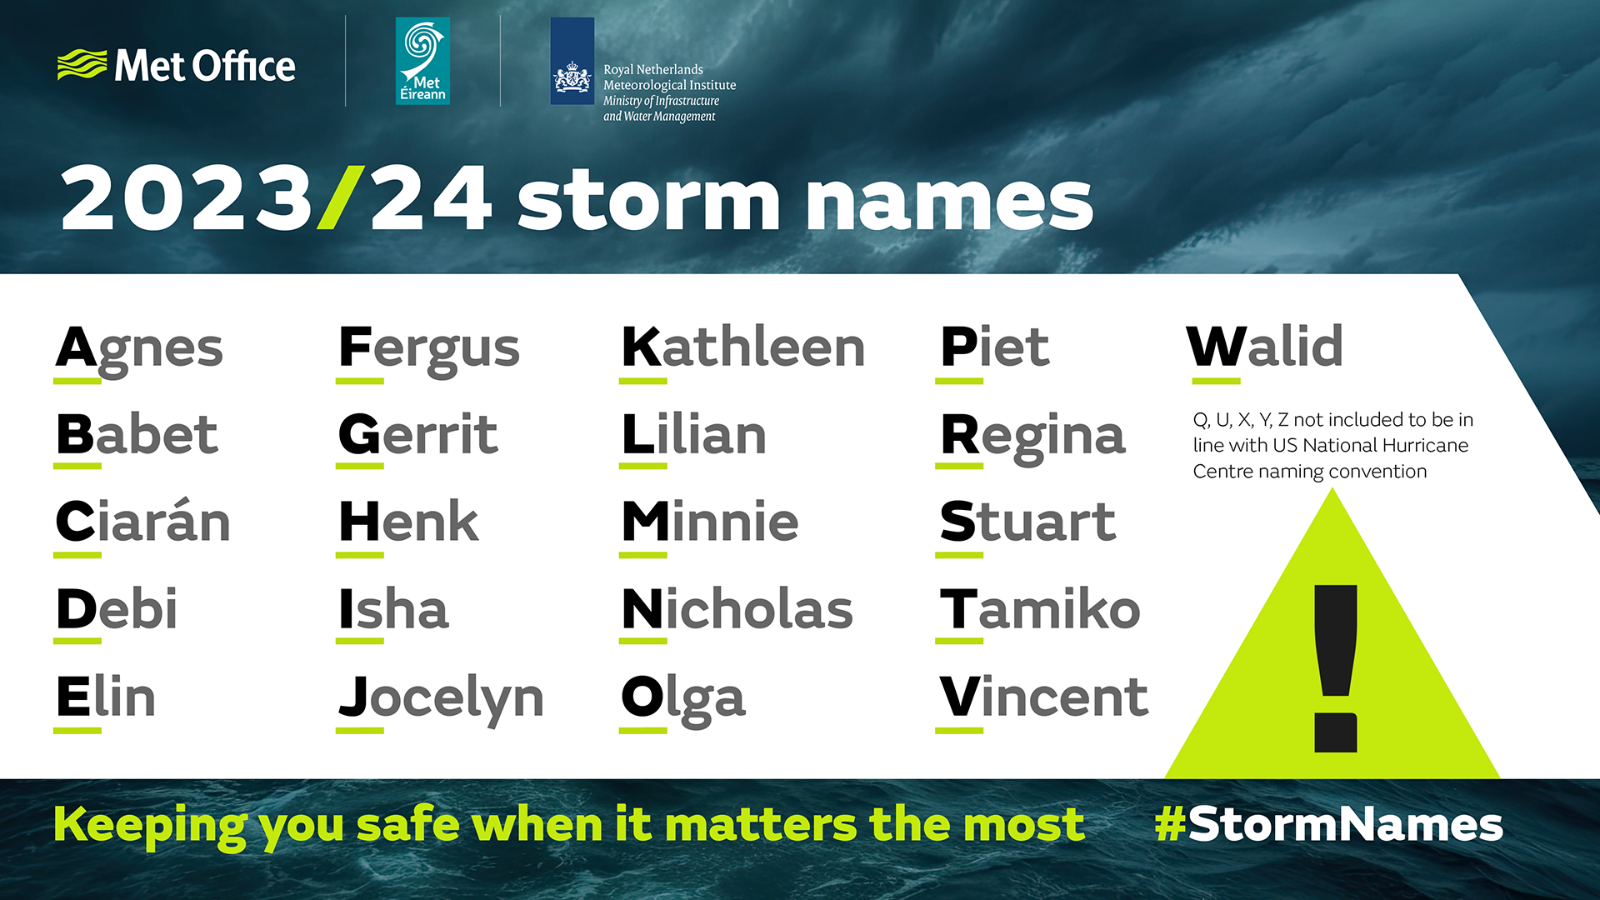 UK Met Office storm names 2023 24